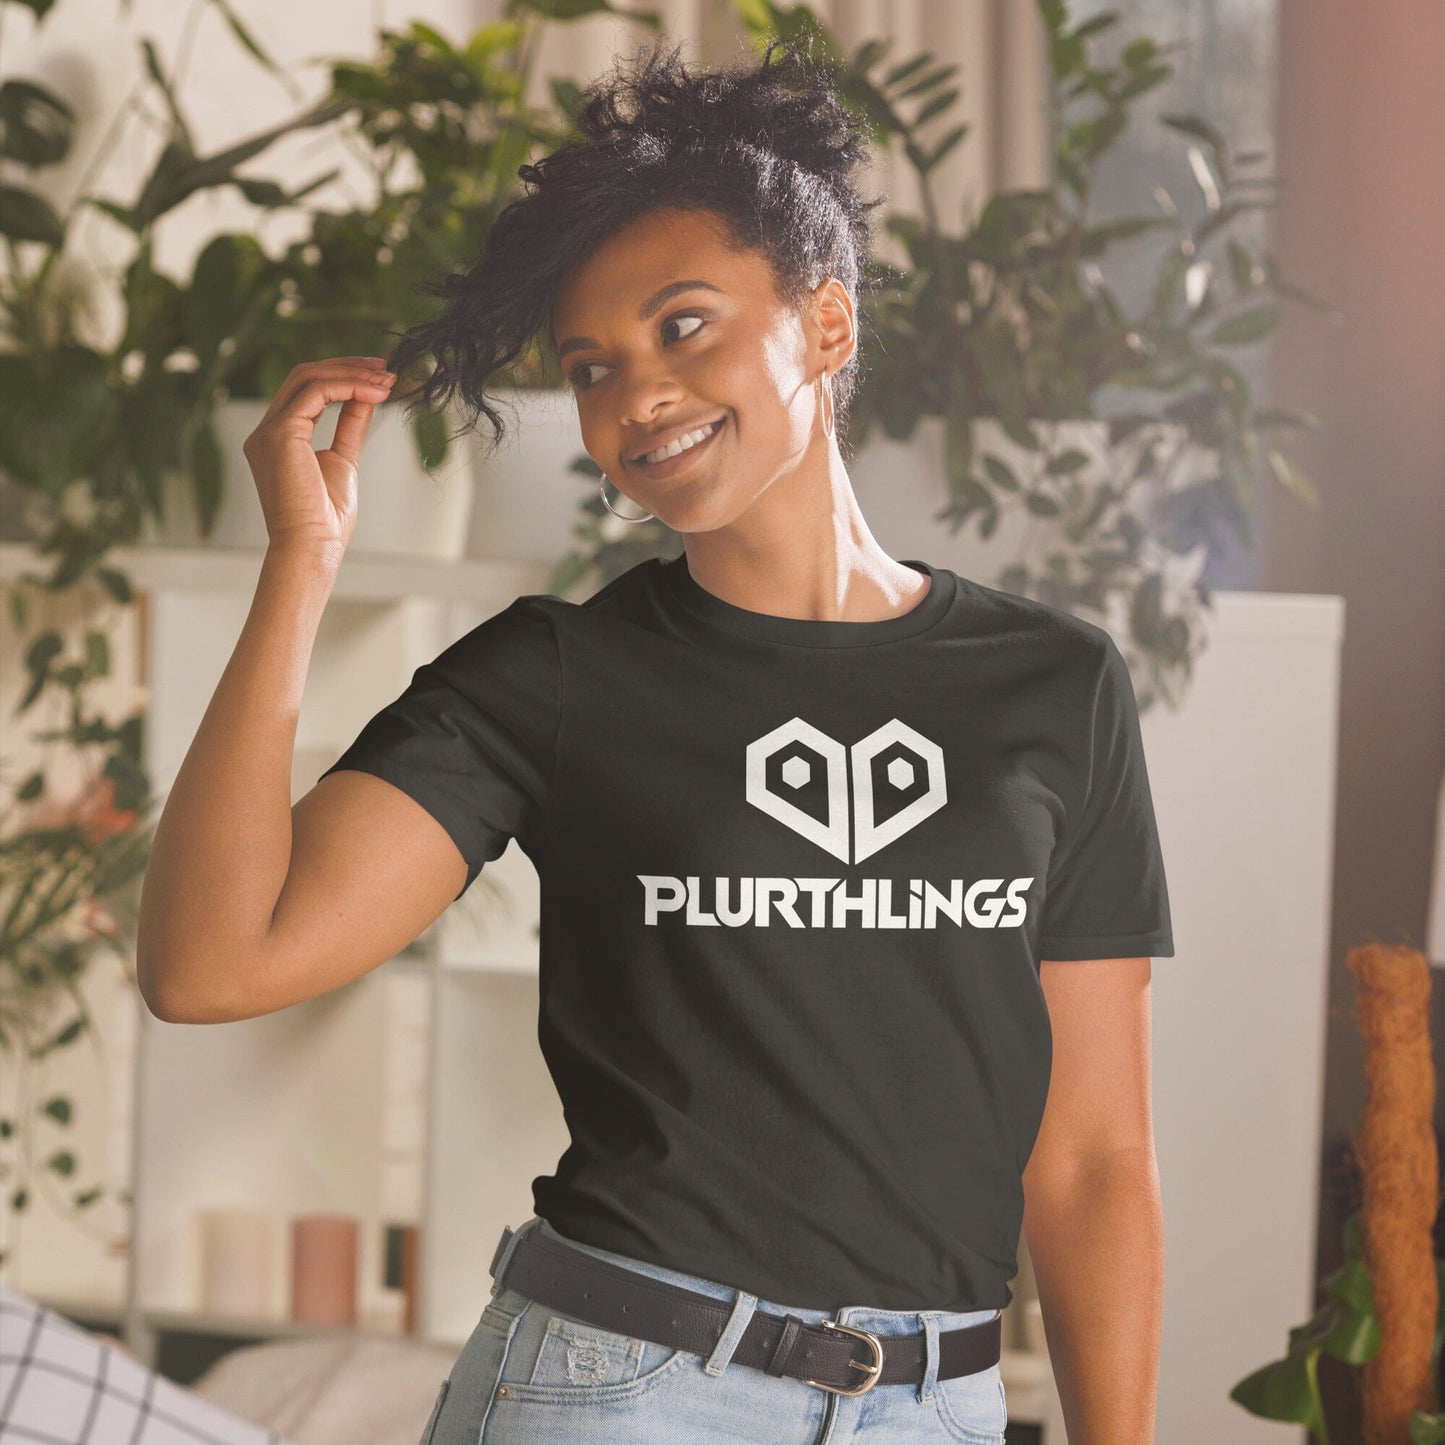 Plurthlings Heart Logo Short-Sleeve Unisex T-Shirt PLURTHLINGS Black S 